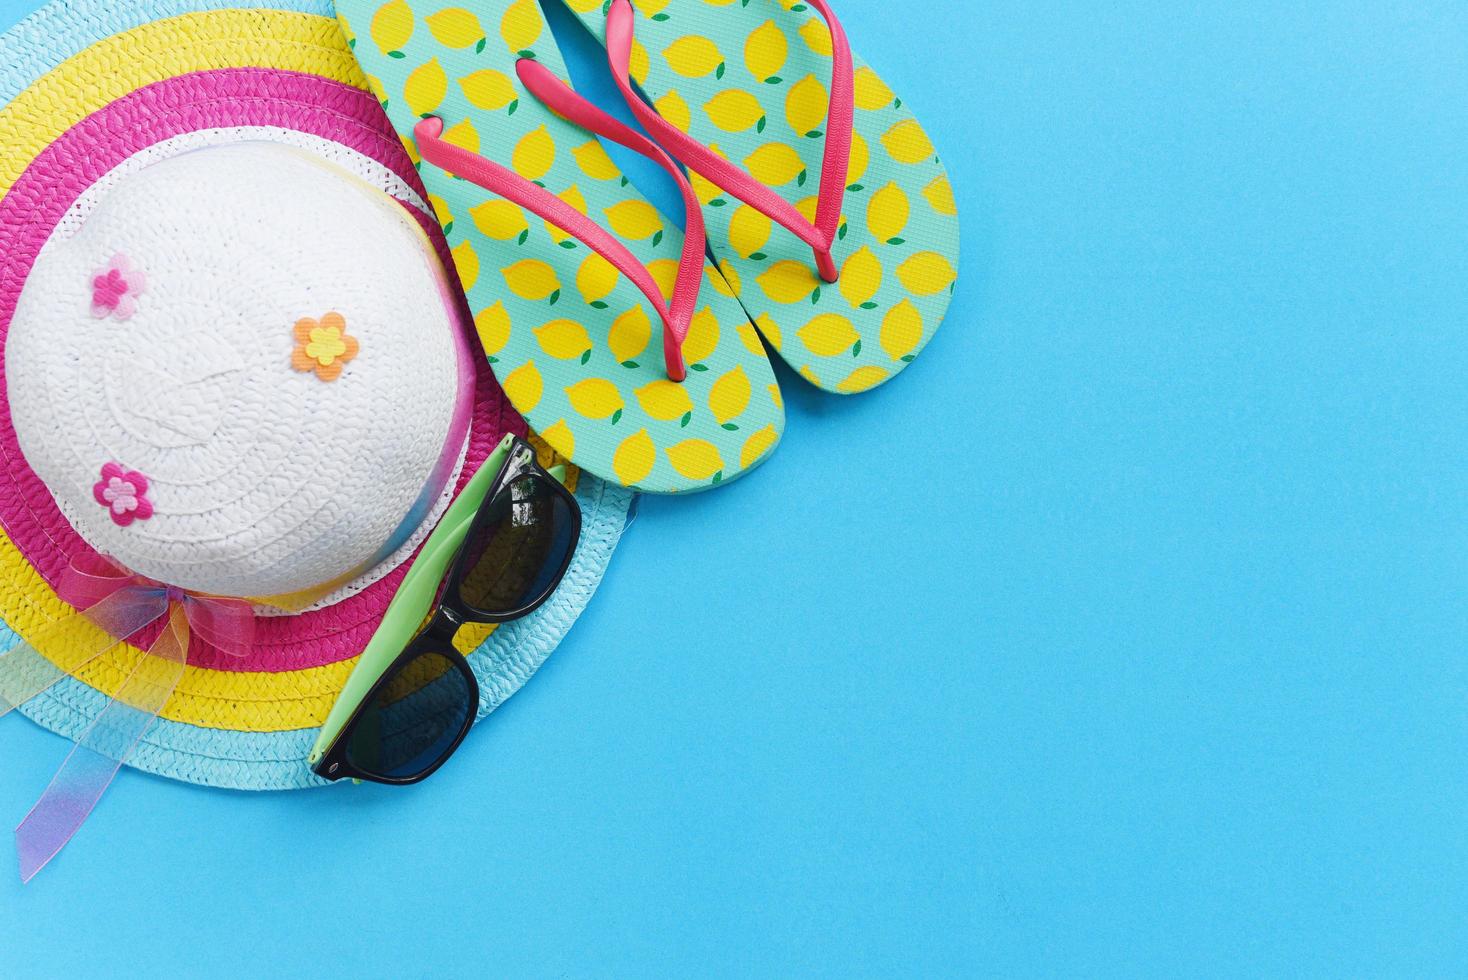 Reise-Hintergrund-Konzept-Elemente Sommer-Reise-Accessoires mit Sonnenbrille Hut Flip-Flops für Reisende auf blauem Hintergrund foto